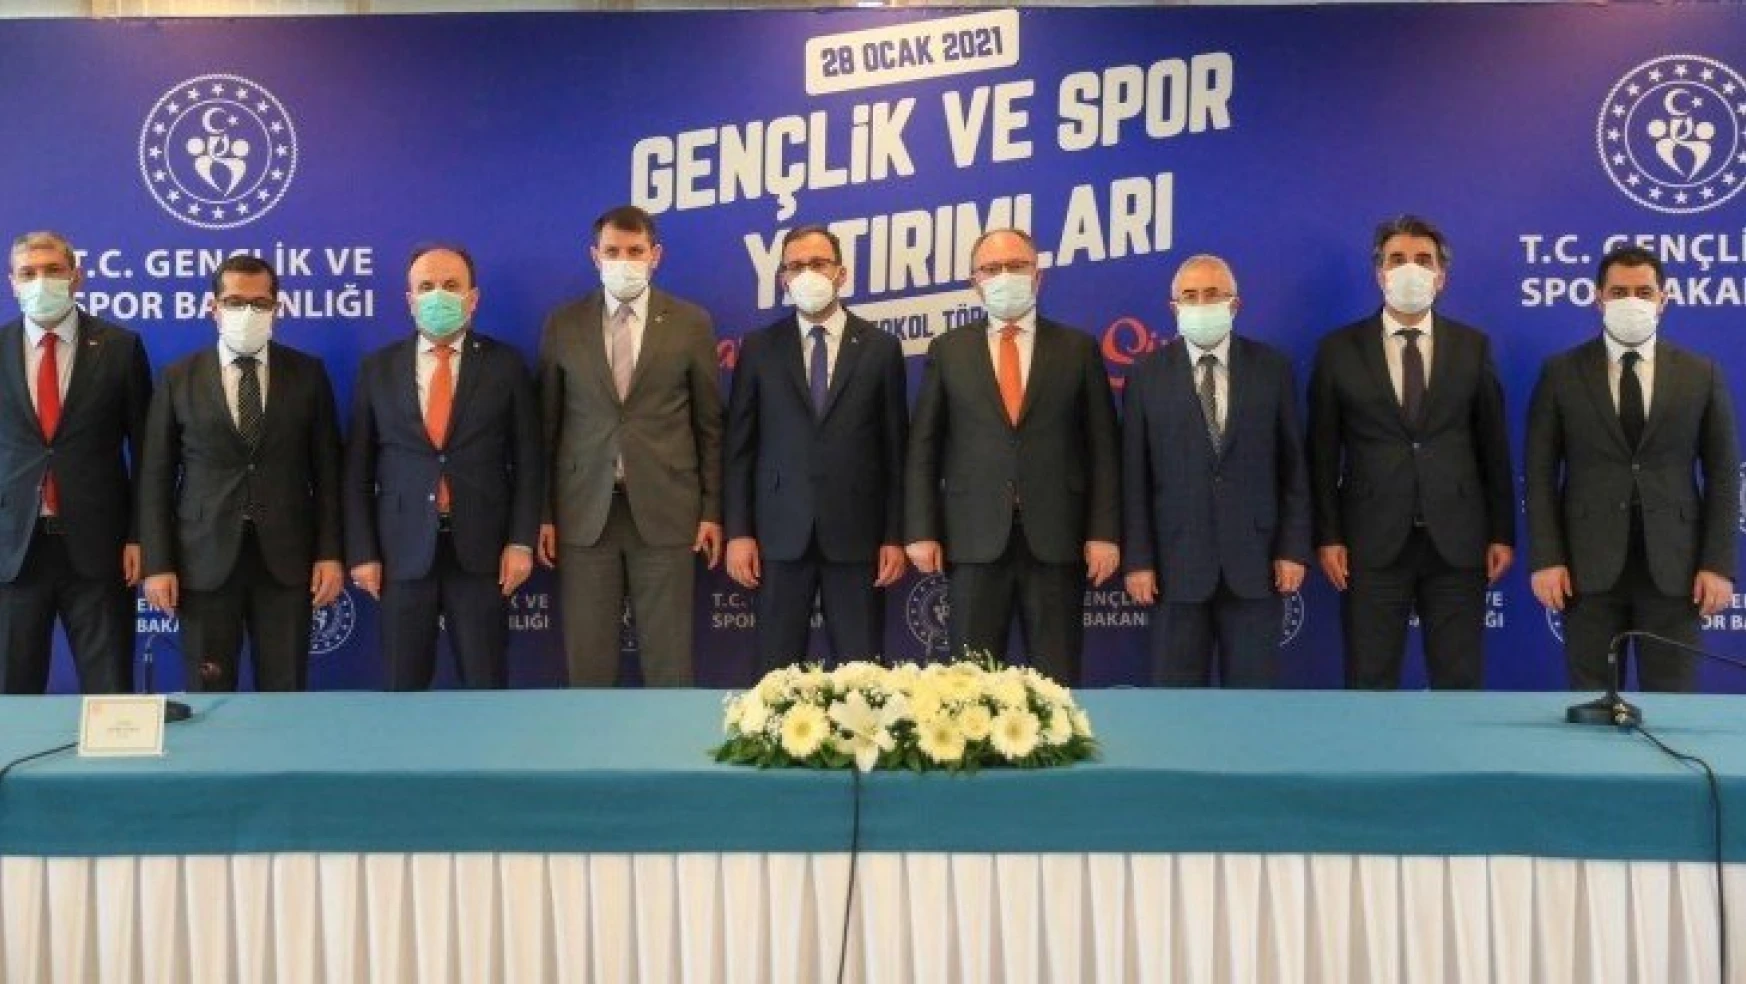 Gençlik Ve Spor Bakanlığı'ndan Sivas'a 30 Milyon Tl'lik Destek…